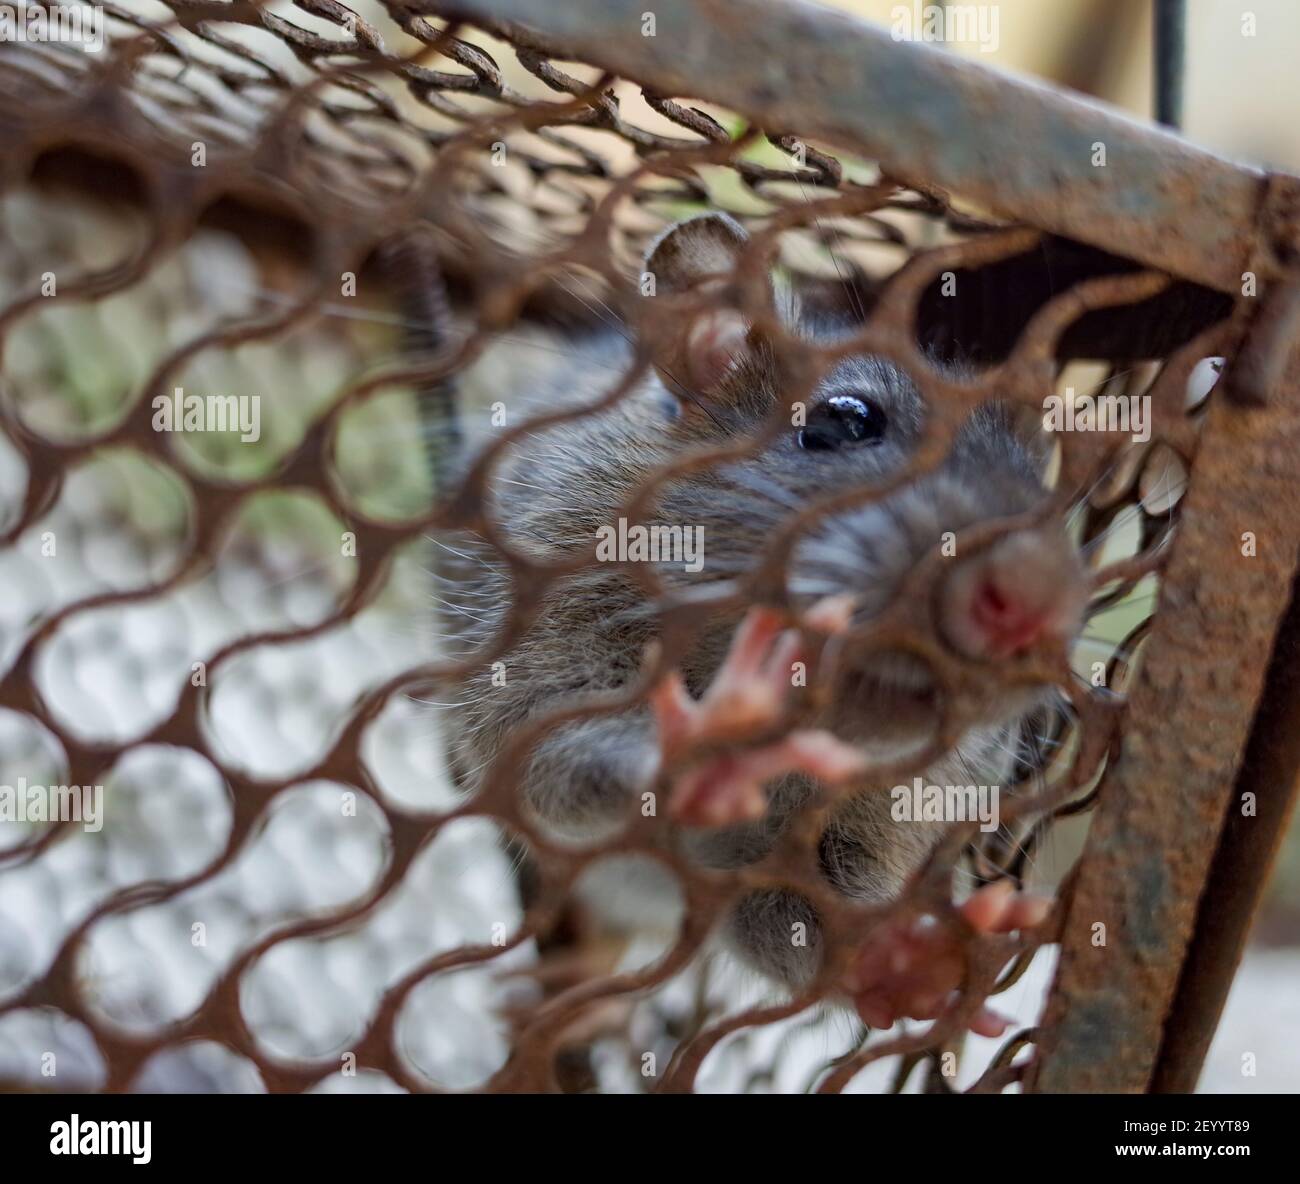 Rata doméstica atrapada en una jaula metálica Foto de stock